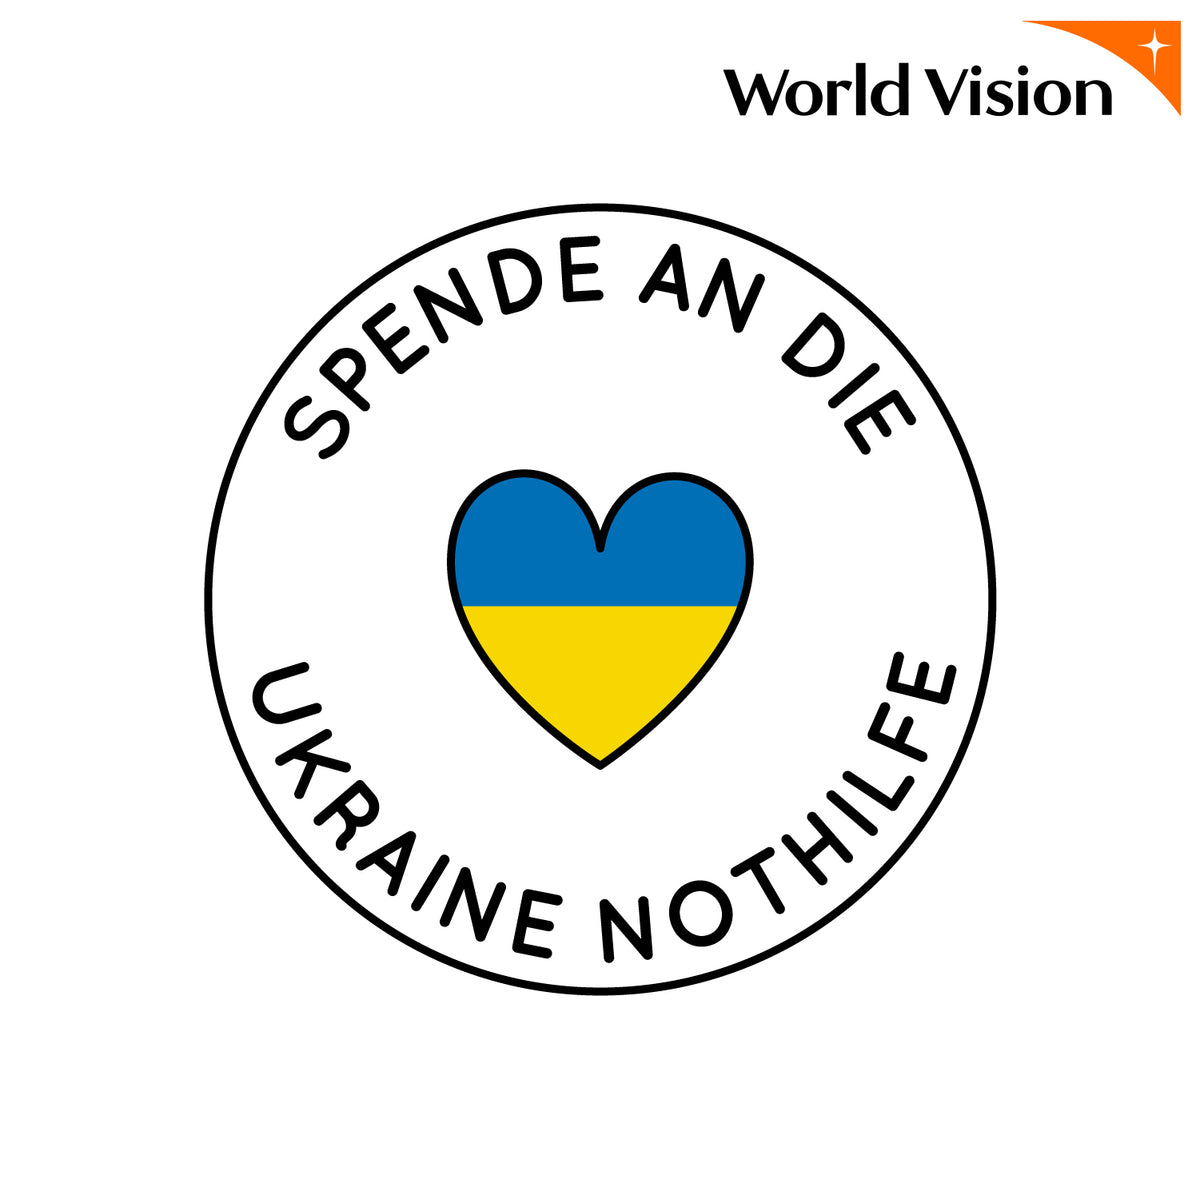 Spende an die Ukraine Nothilfe